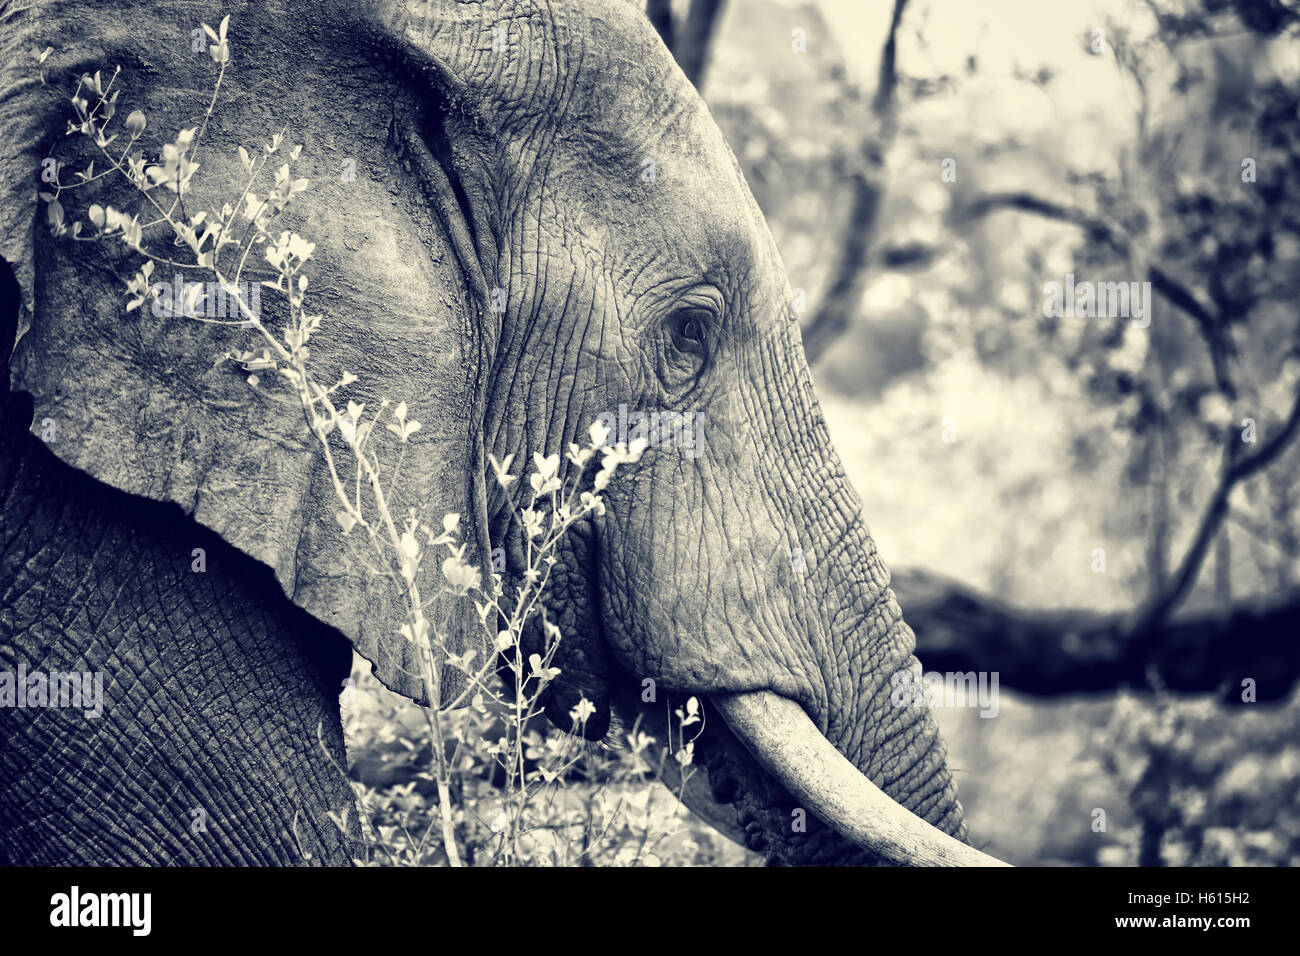 Vista lateral de gran hermoso elefante retrato al aire libre, fotografía en blanco y negro de los animales salvajes, safari juego duro Foto de stock